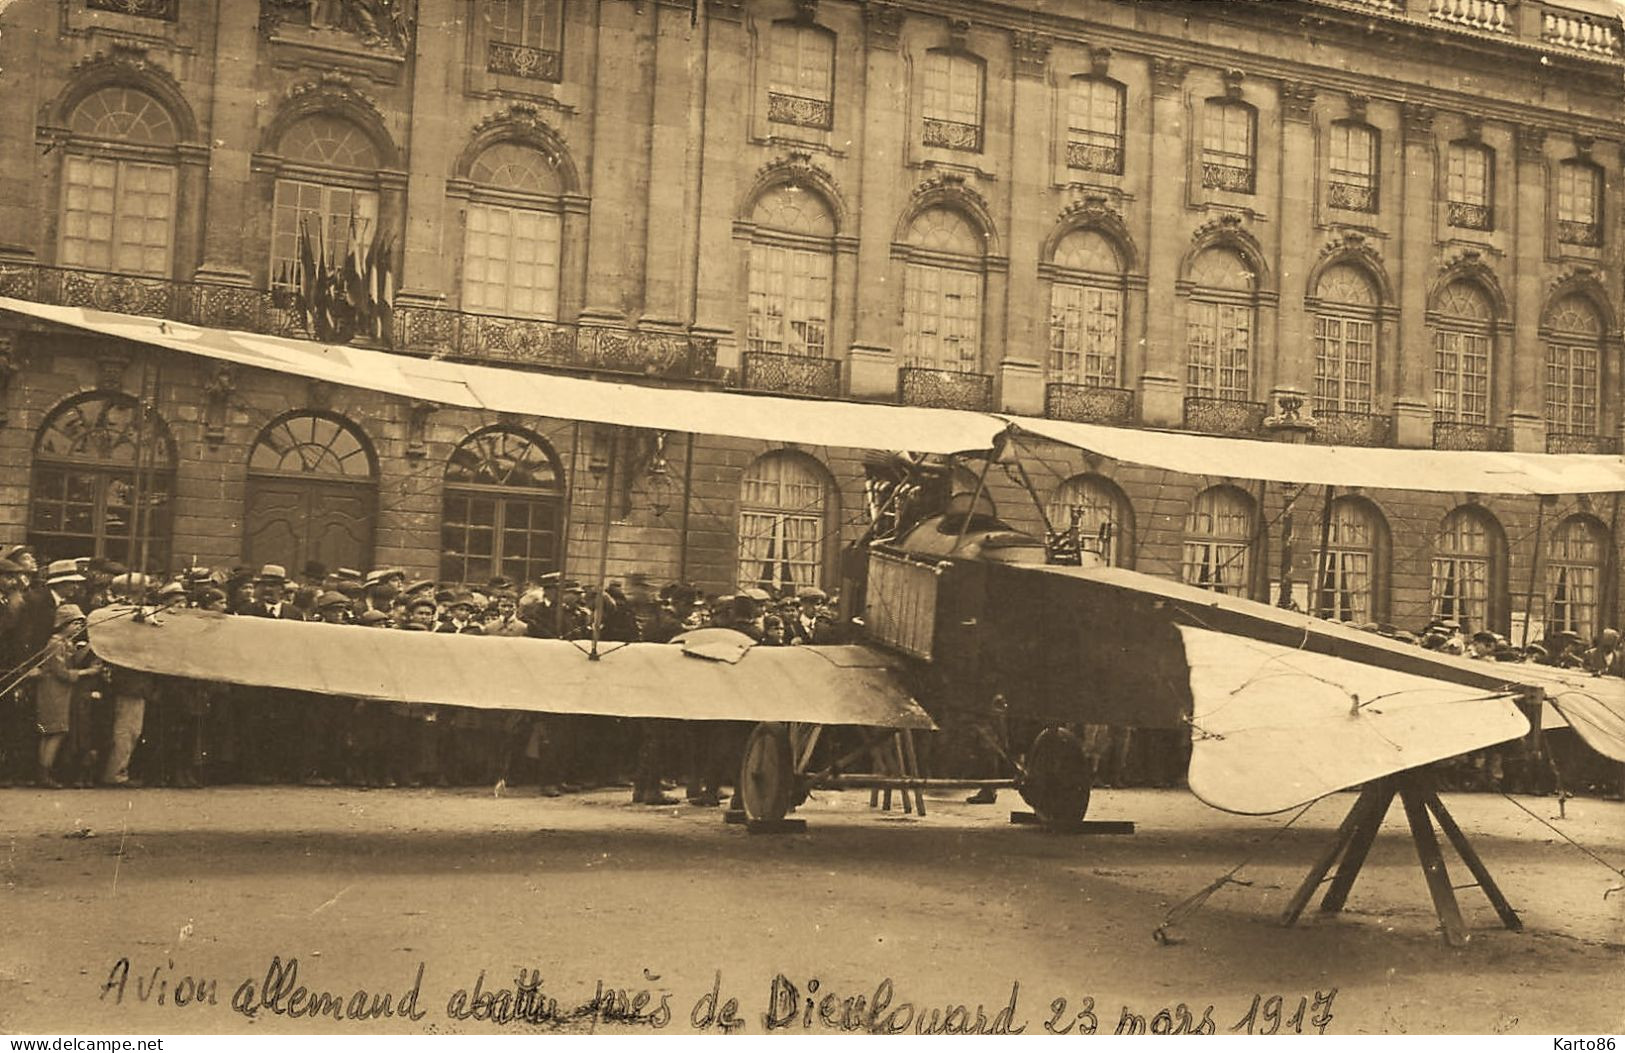 Nancy Aviation * 3 Cartes Photos * Avion Allemand Abattu Près Dieulouard 23 Mars 1917 * Ww1 Guerre 14/18 War - Nancy